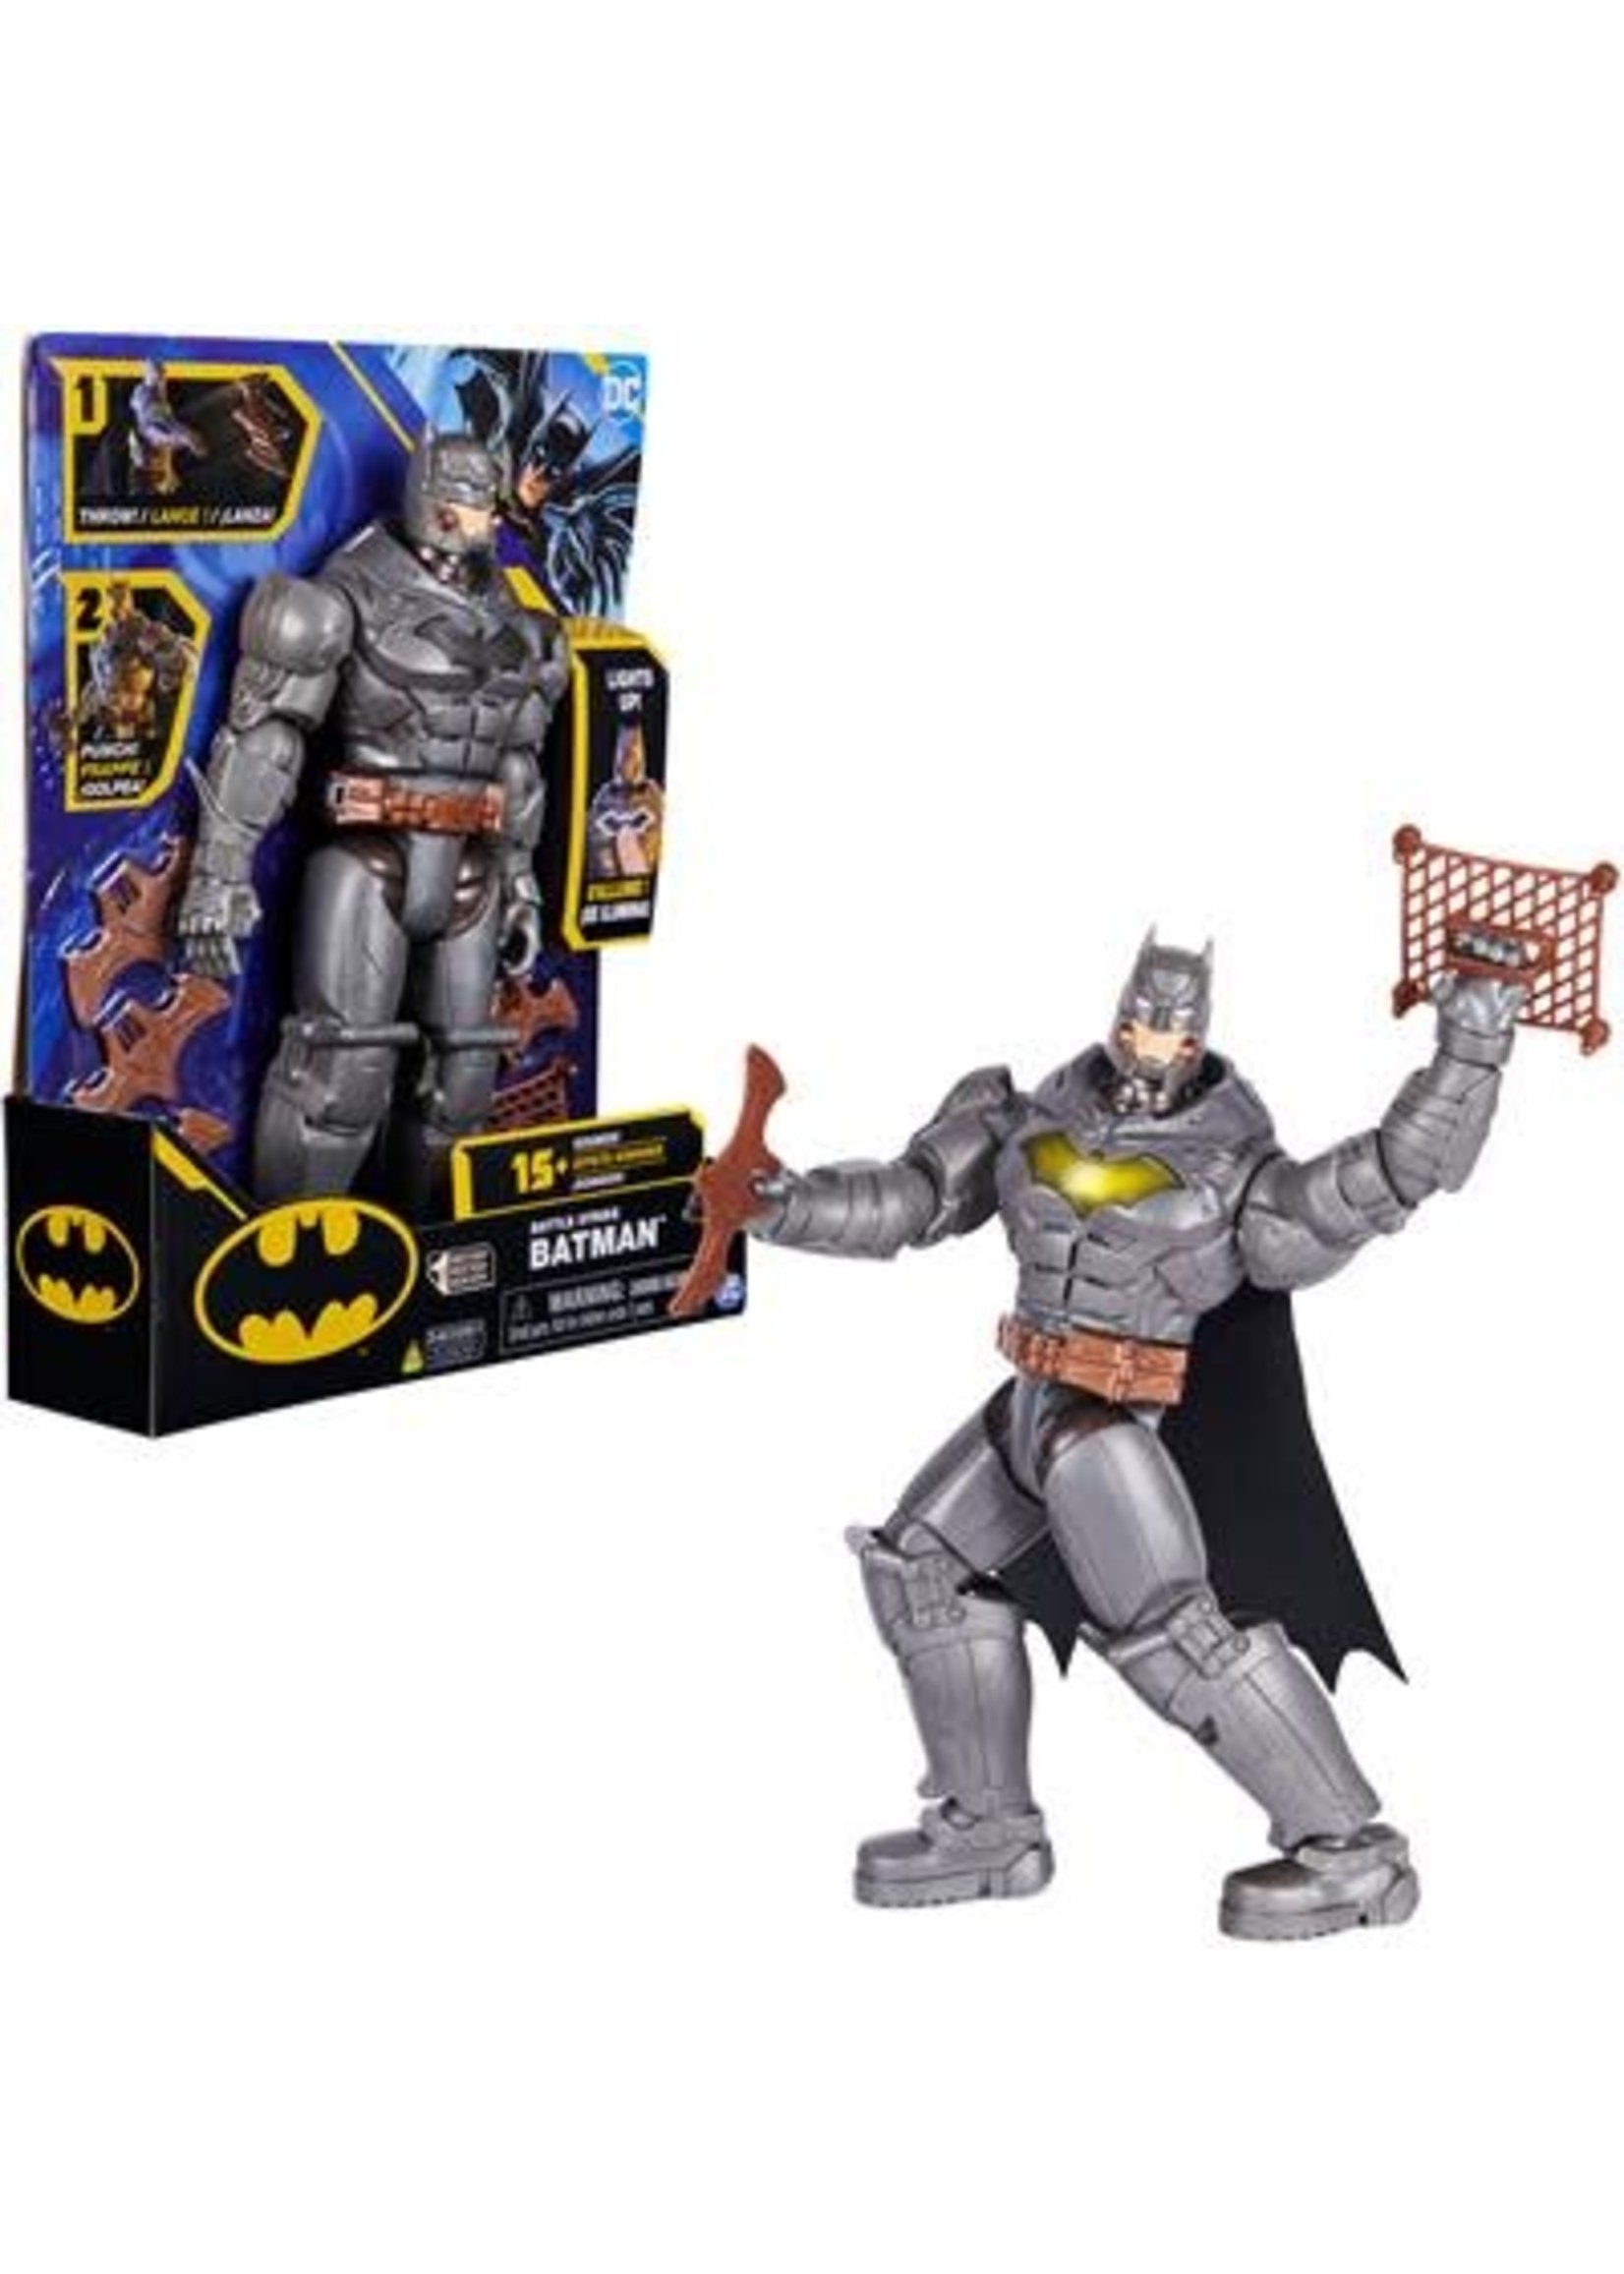 Bel terug Vergelijkbaar Stam Batman 30 cm. Figure Feature - Speelgoed Wierden